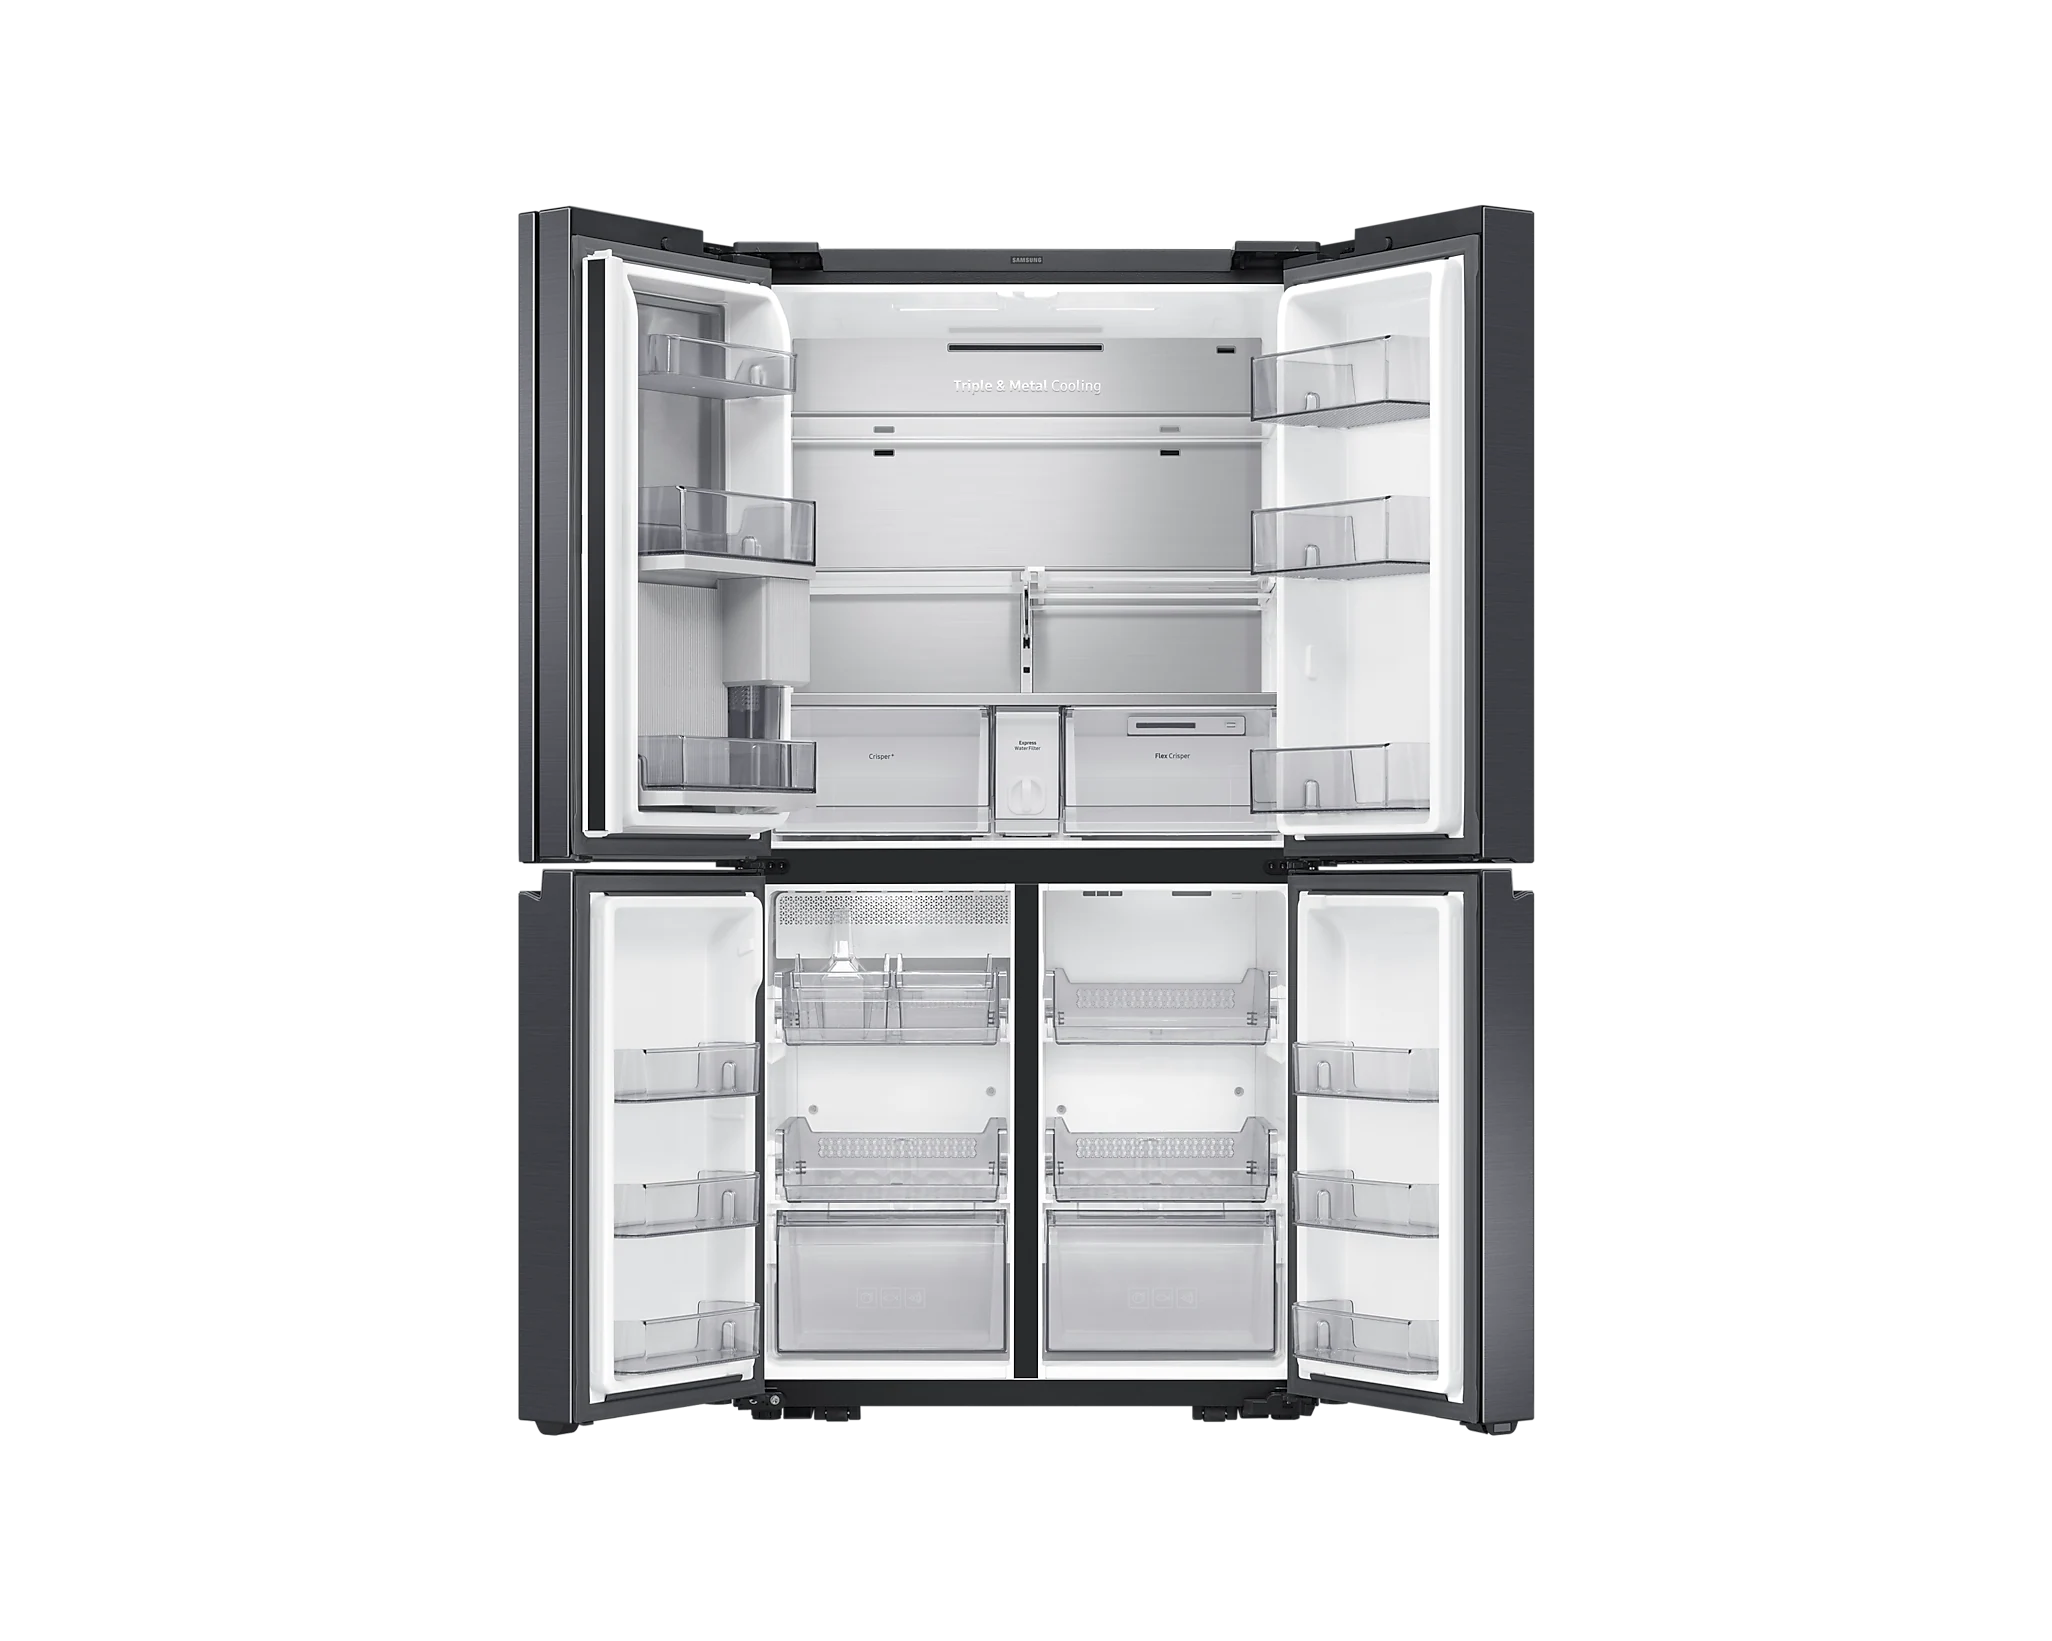 Réfrigérateur multi-portes Samsung RF65A967ESG - Chardenon Équipe